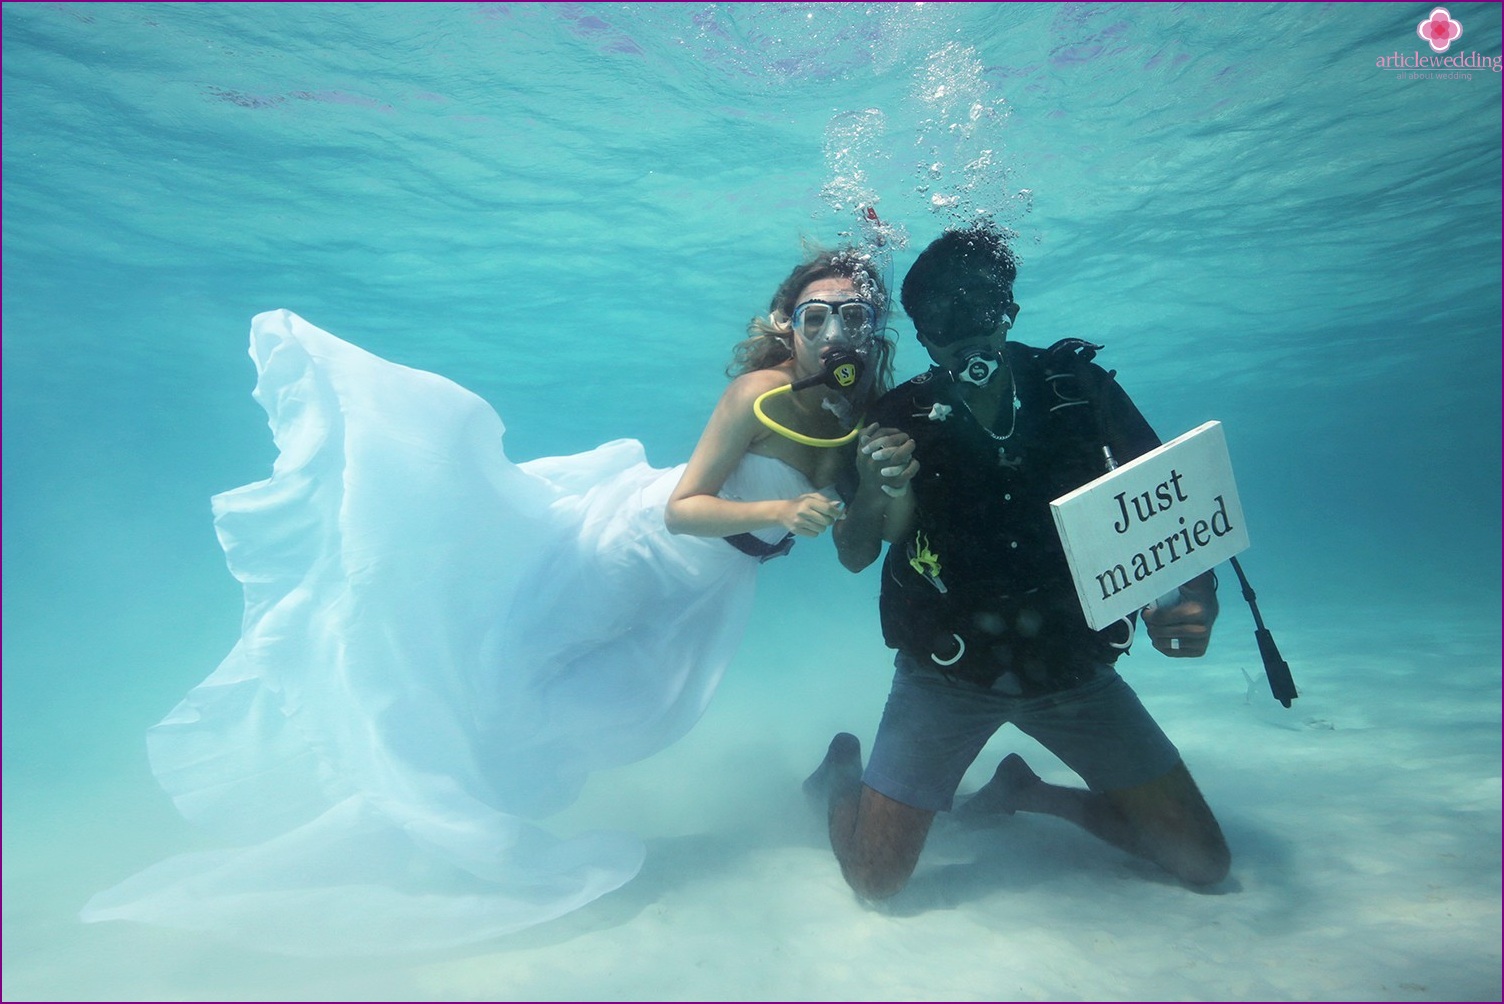 Esküvő víz alatt